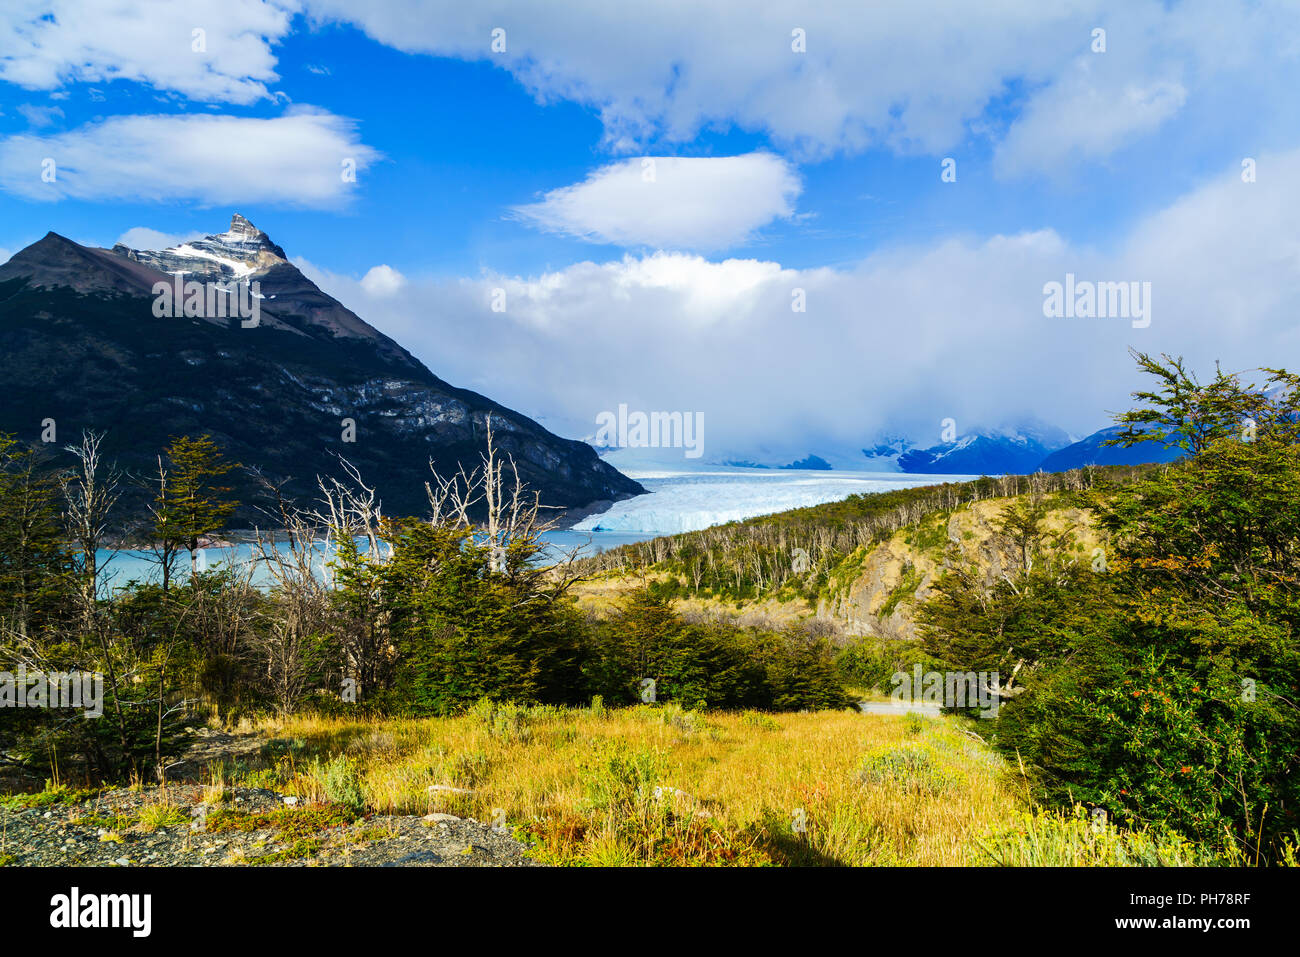 Ghiacciaio Perito Moreno in Los Glacier National Park Foto Stock